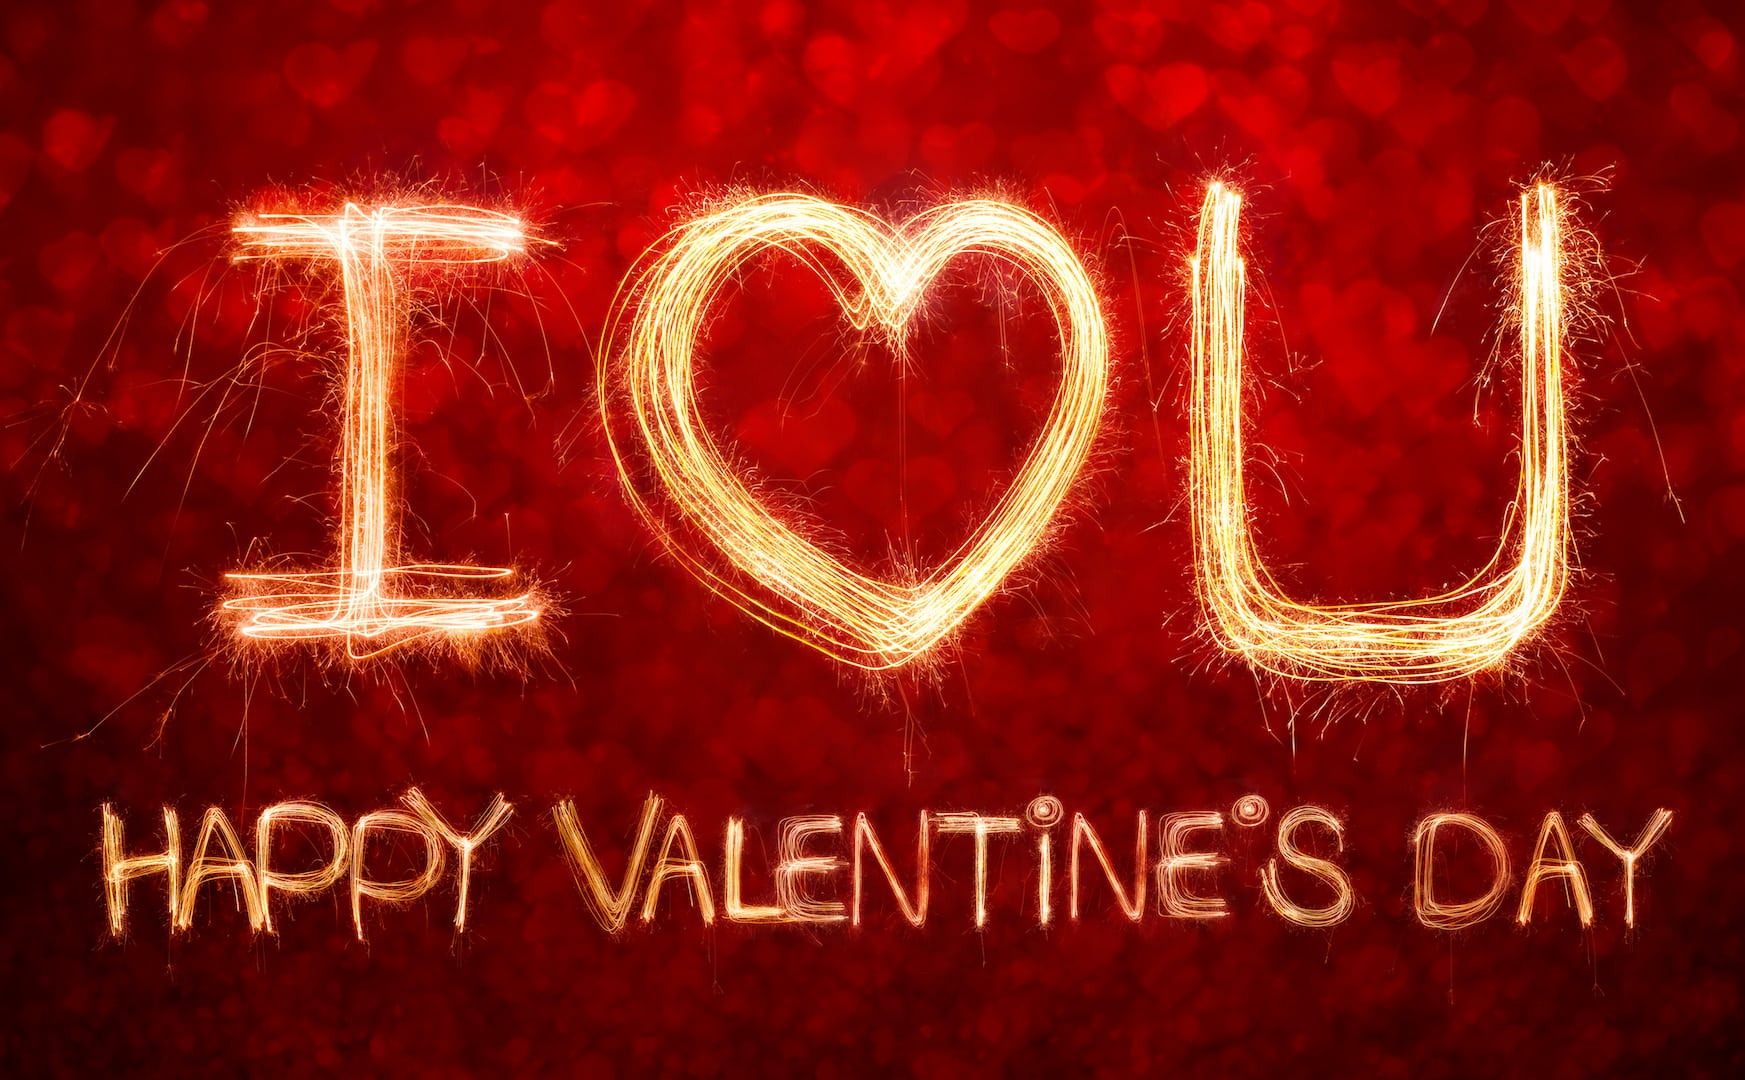 Celebrate Valentine's Day - AdobeStock_100532603 copy